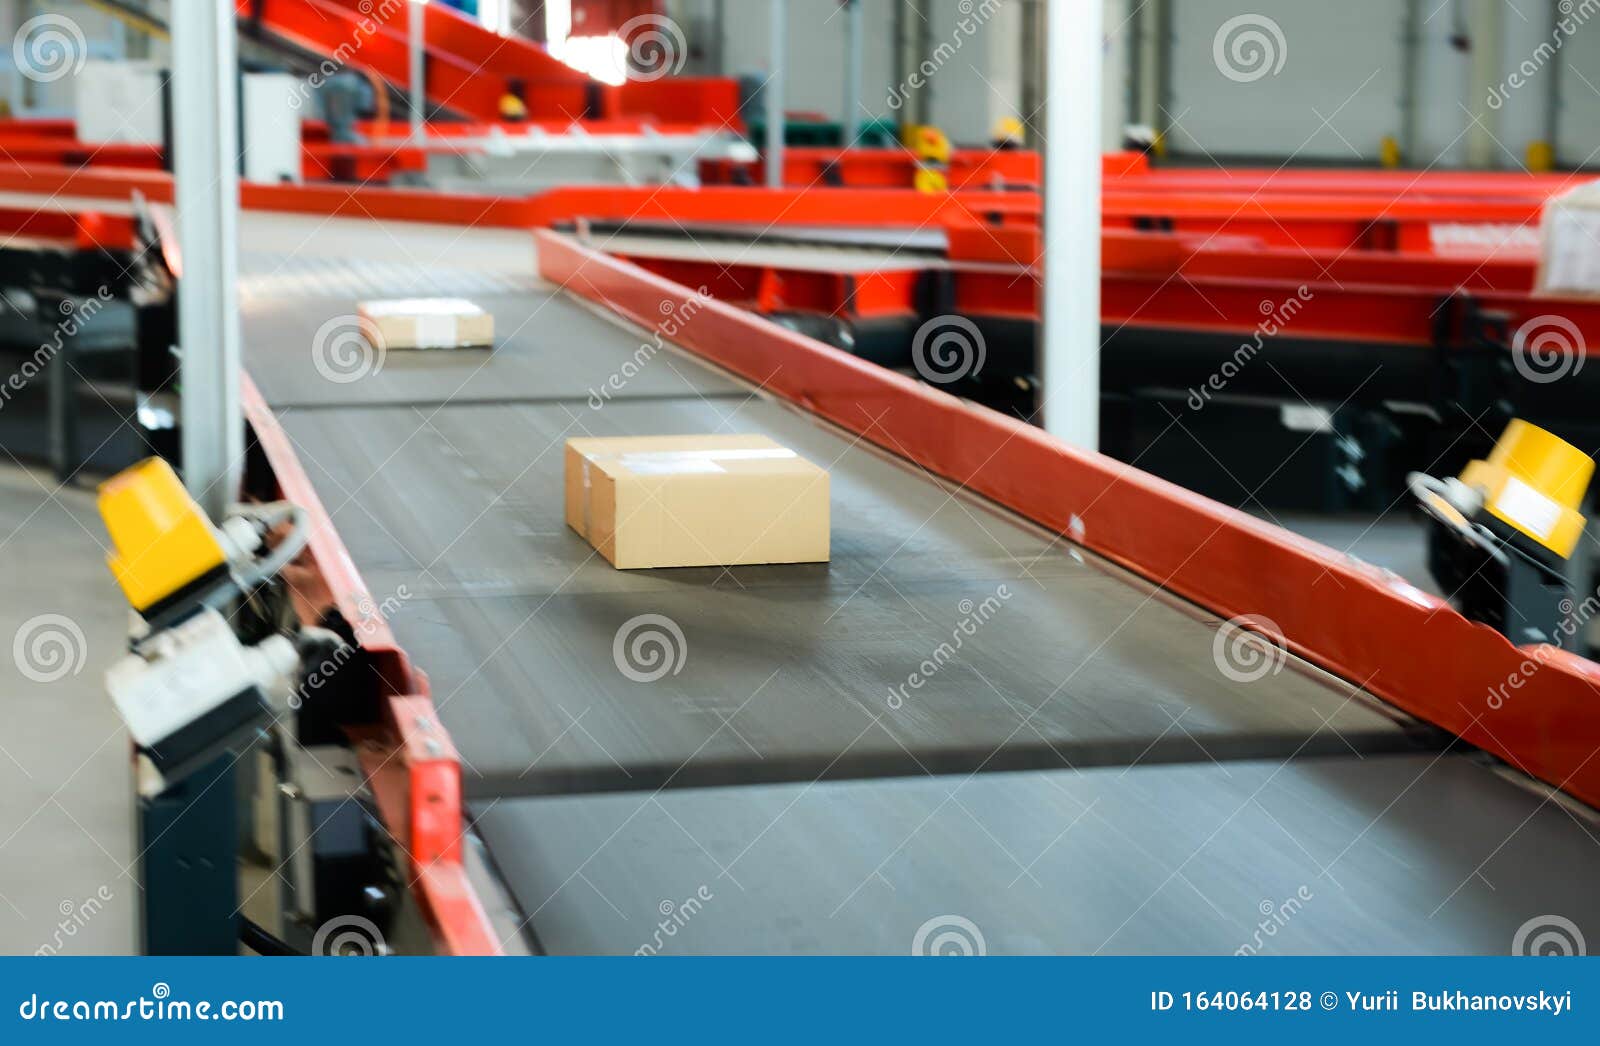 cardboard boxes on conveyor belt.parcels transportation system concept